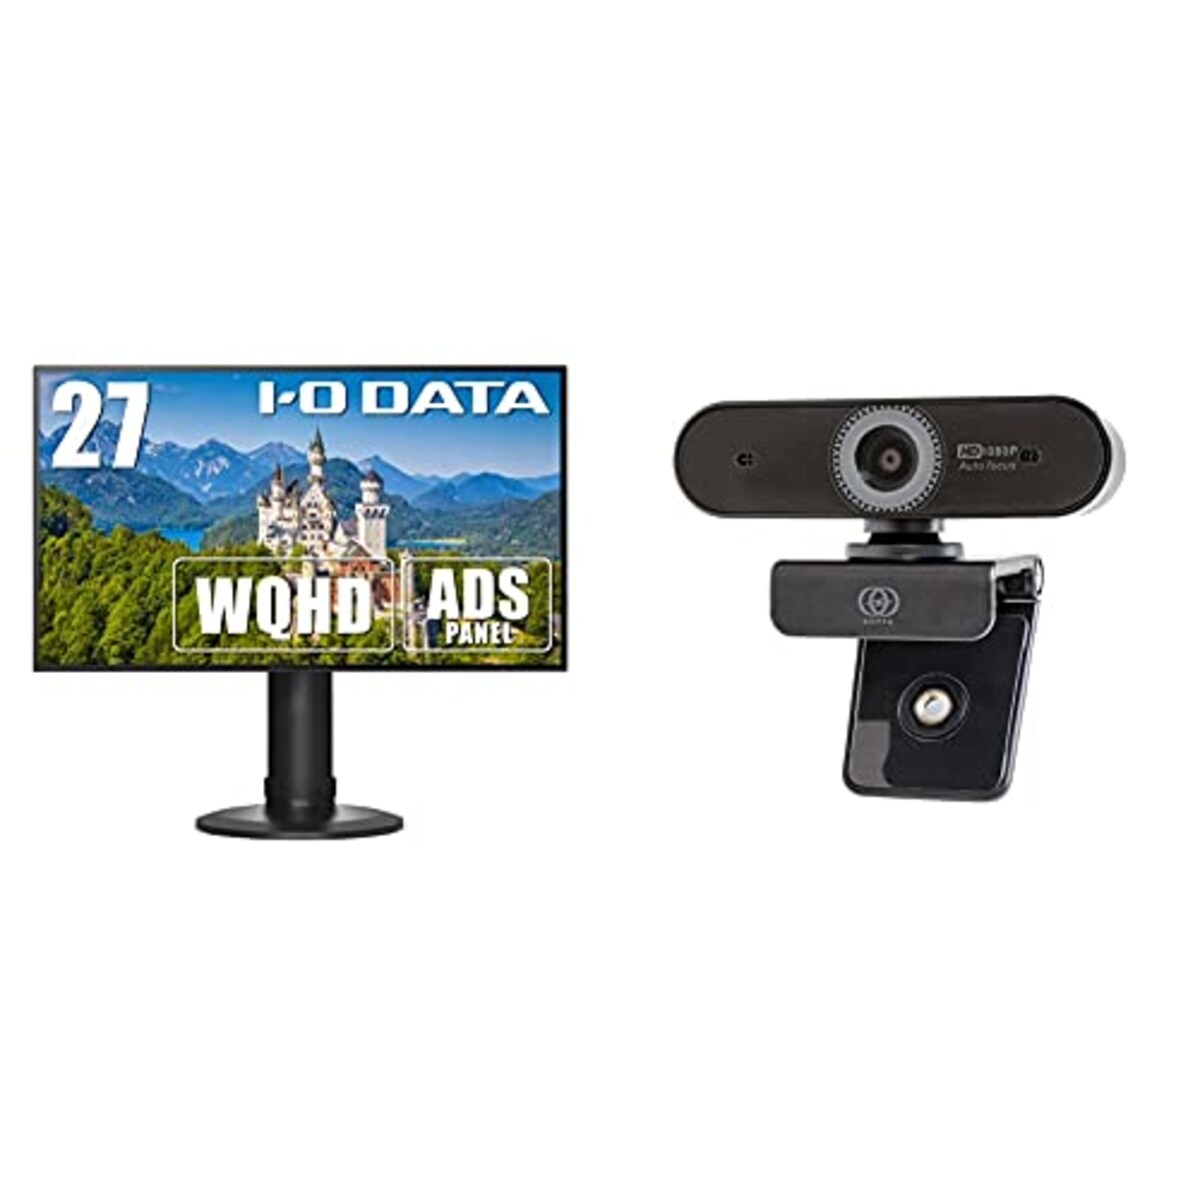 【セット買い】I-O DATA モニター 27インチ WQHD ADSパネル フレームレス 高さ調整 回転 HDMI×3 DP×1 スピーカー付 土日サポート EX-LDQ273DBS & GOPPA ウェブカメラ オートフォーカス機能搭載 フルHD 200万画素 1920×1080対応 マイク内蔵 GP-UCAM2FA/E